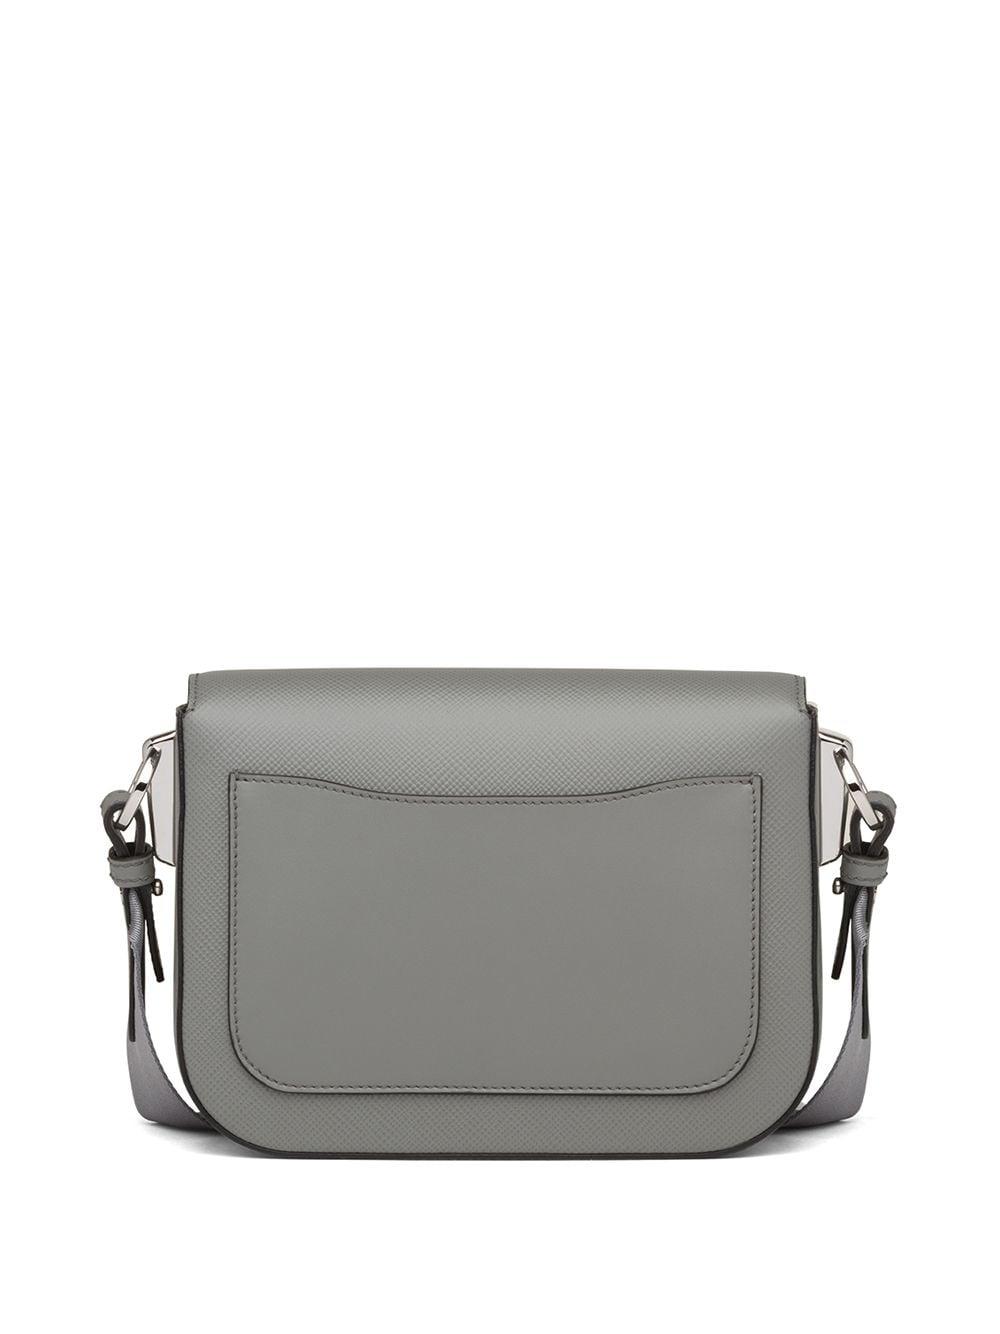 Prada Leather Identity Crossbody Bag in Grey (Gray) - Lyst